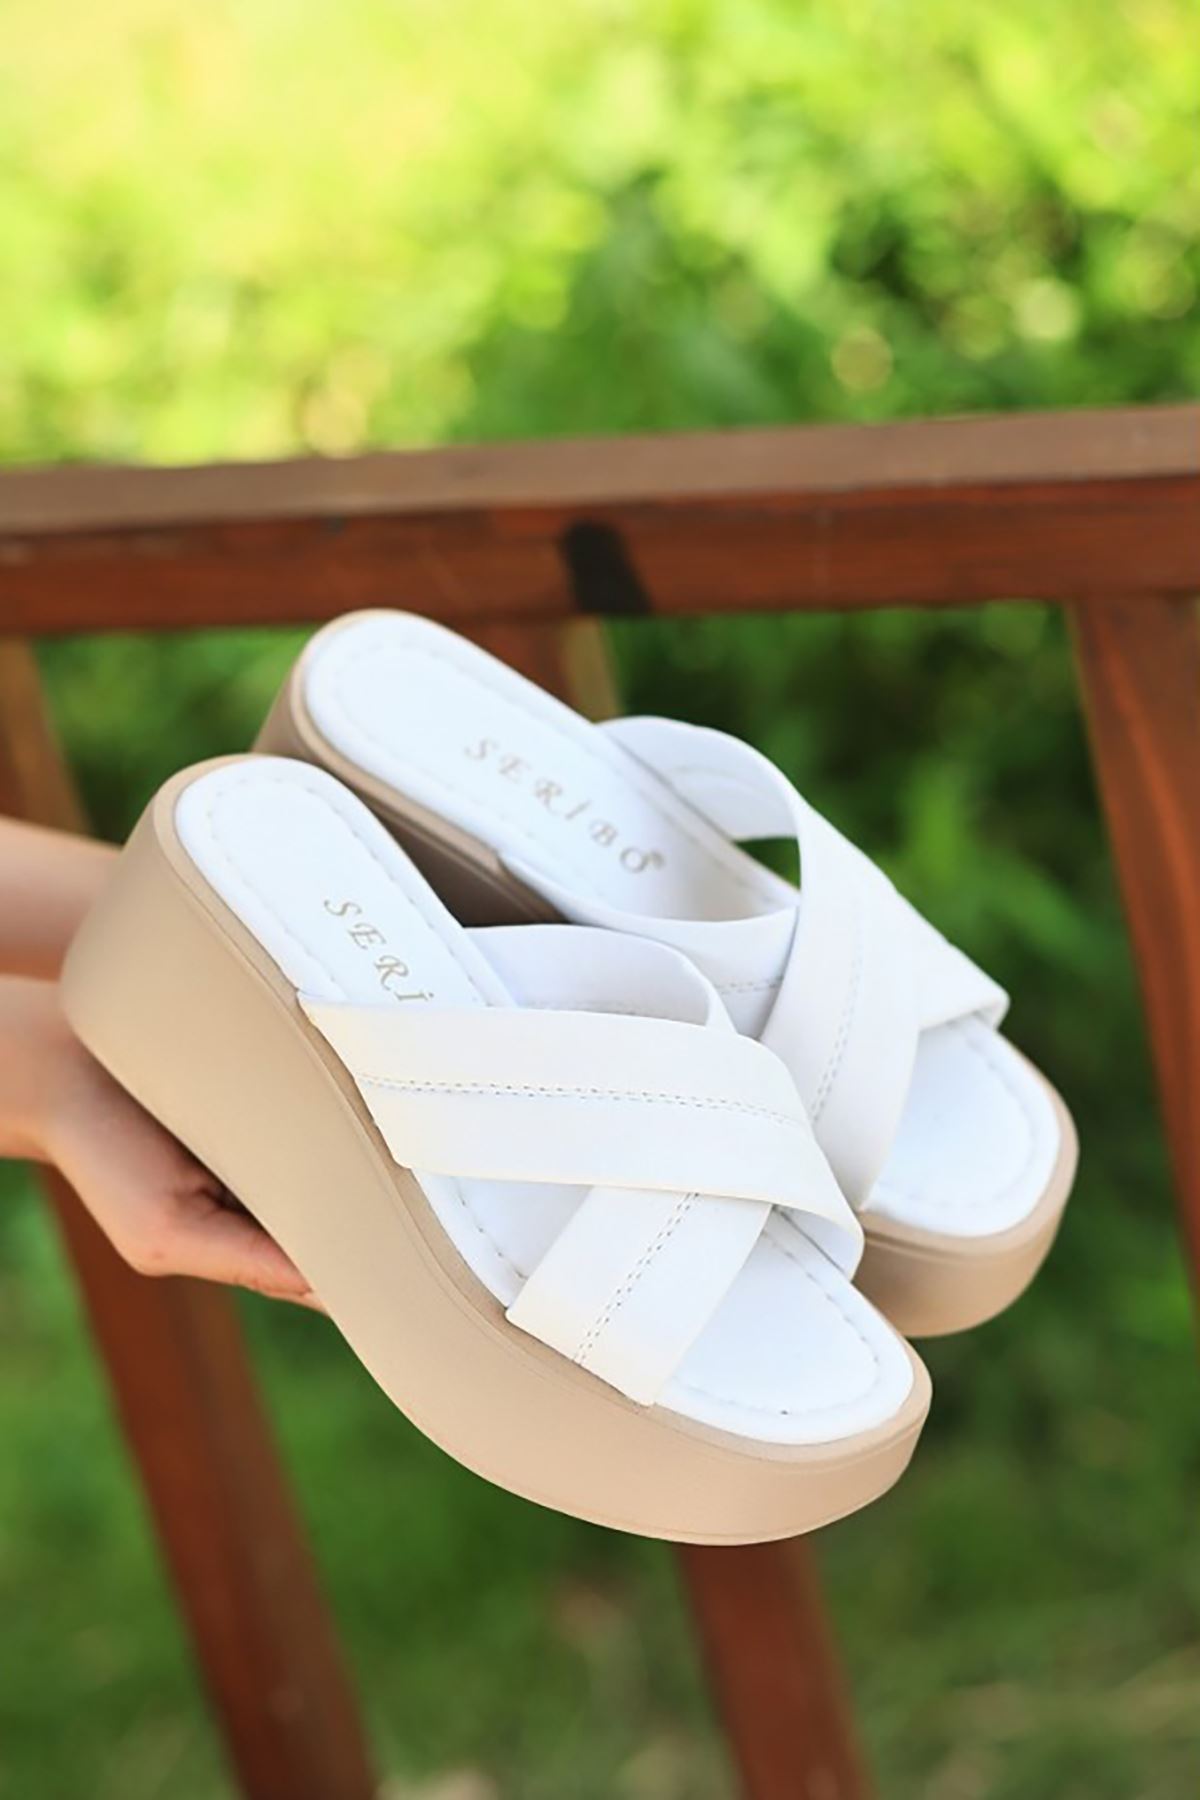 Mida Shoes ERBOben Beyaz Deri Kadın Dolgu Topuk Terlik